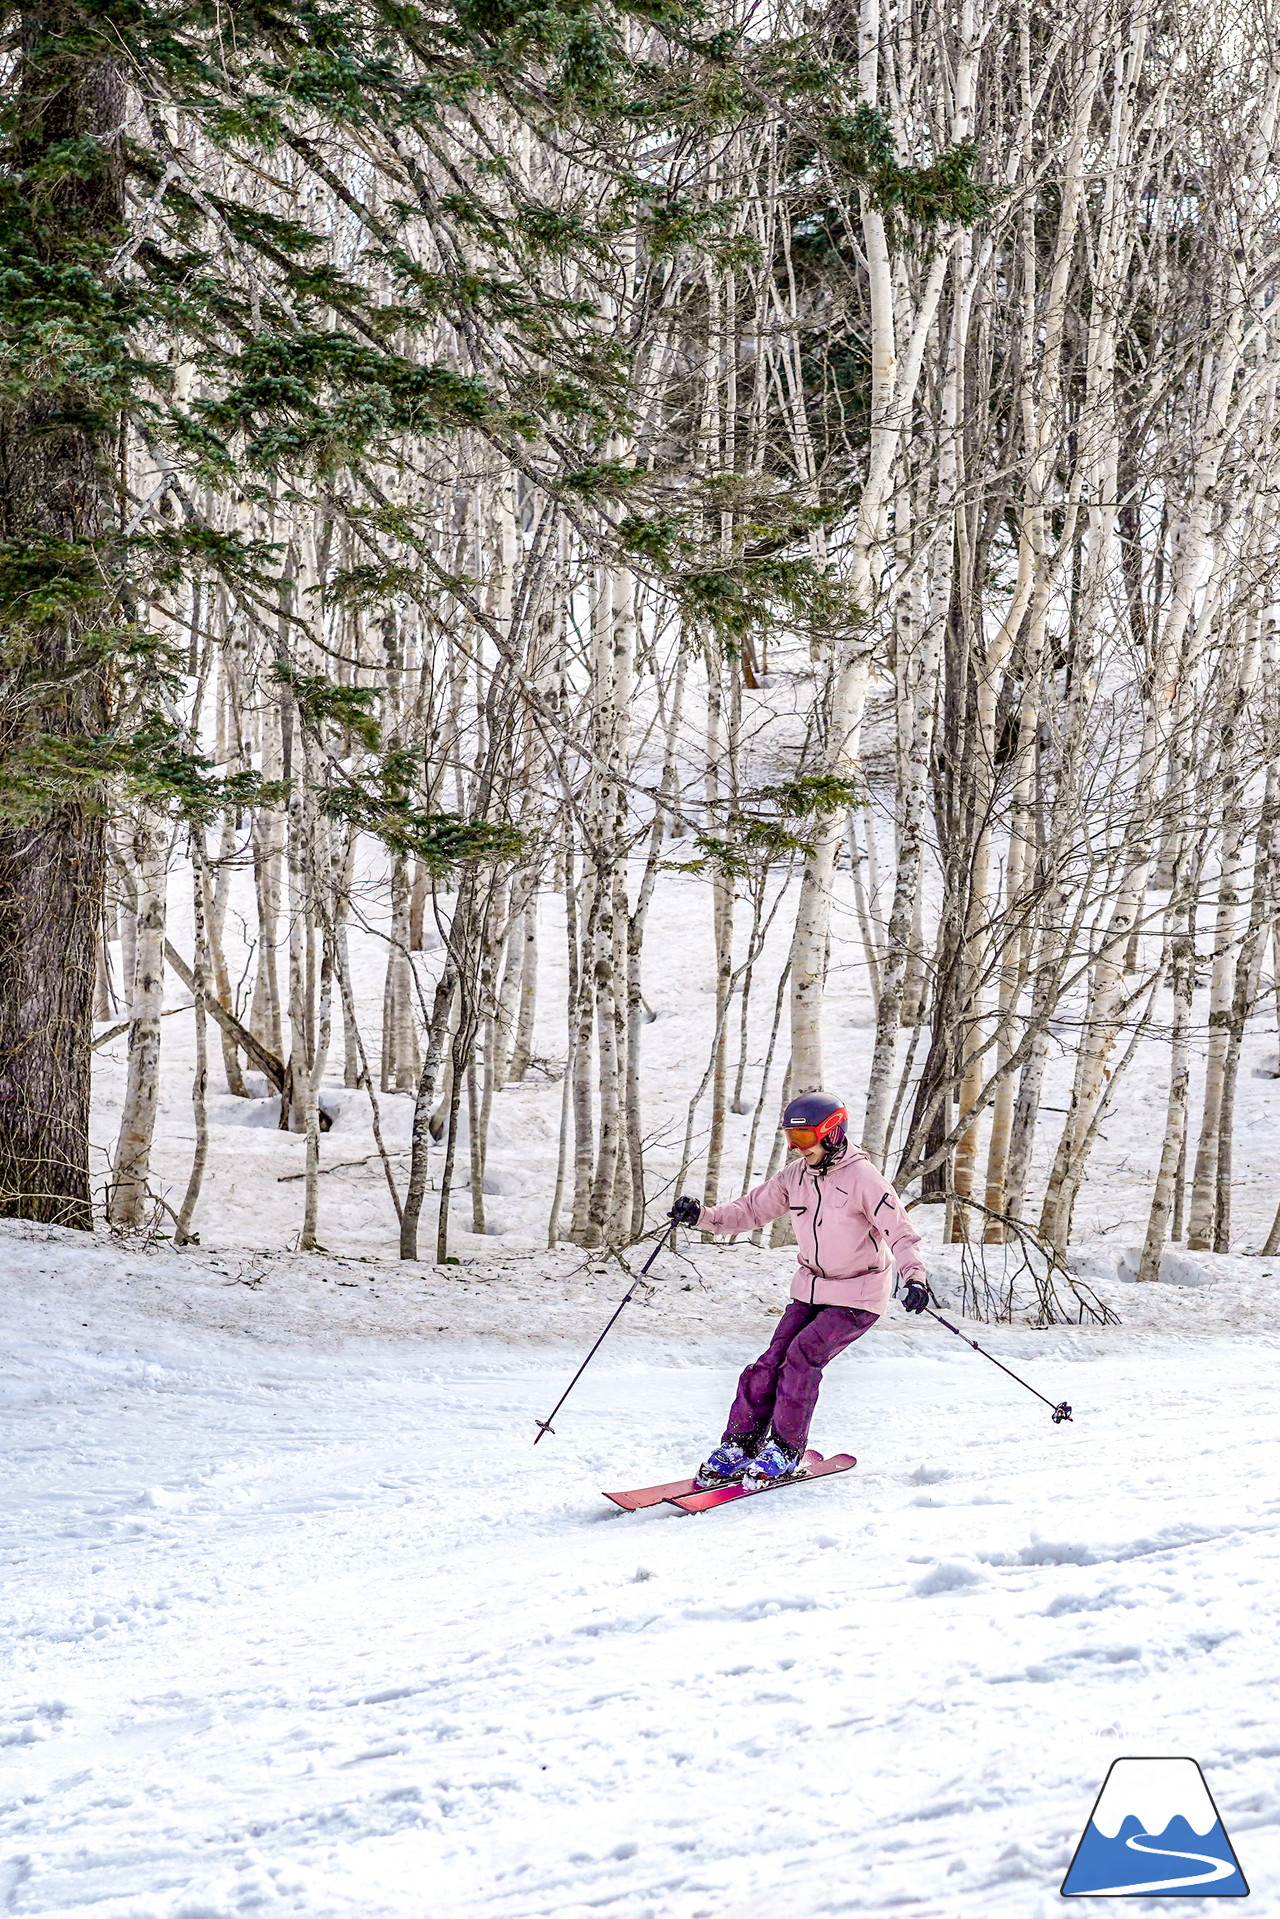 富良野スキー場 のんびりとした雰囲気漂う春のゲレンデ。そこに、サプライズゲスト・プロスキーヤー山木匡浩さん登場！